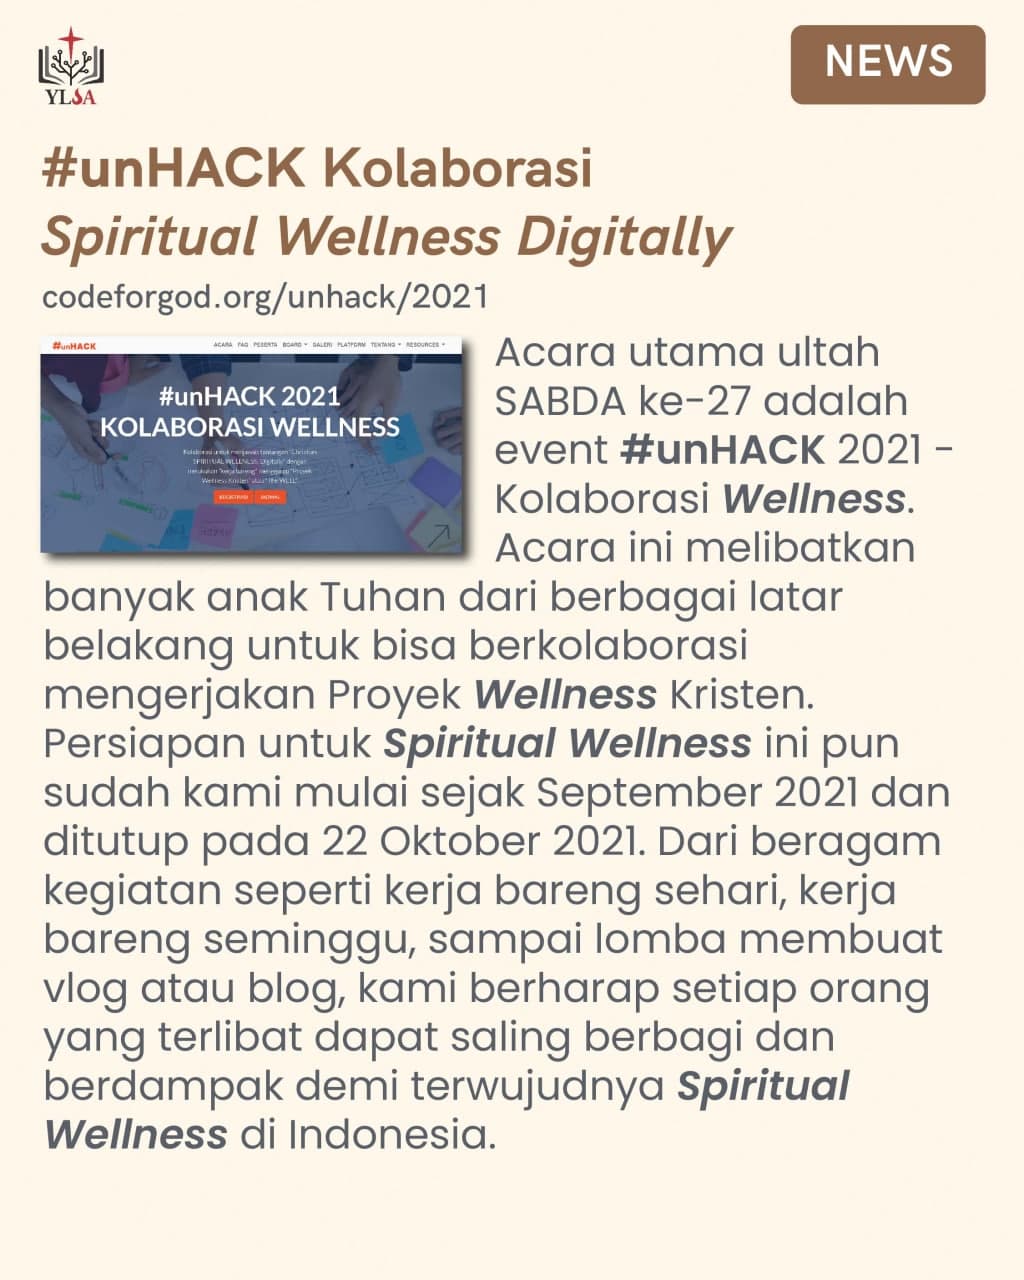 #SABDA27 dirayakan dengan acara khusus yang disebut #unHACK 2021 - Kolaborasi Wellness. Kiranya setiap orang yang terlibat dapat saling berbagi dan menolong menciptakan wellness di sekitar kita.